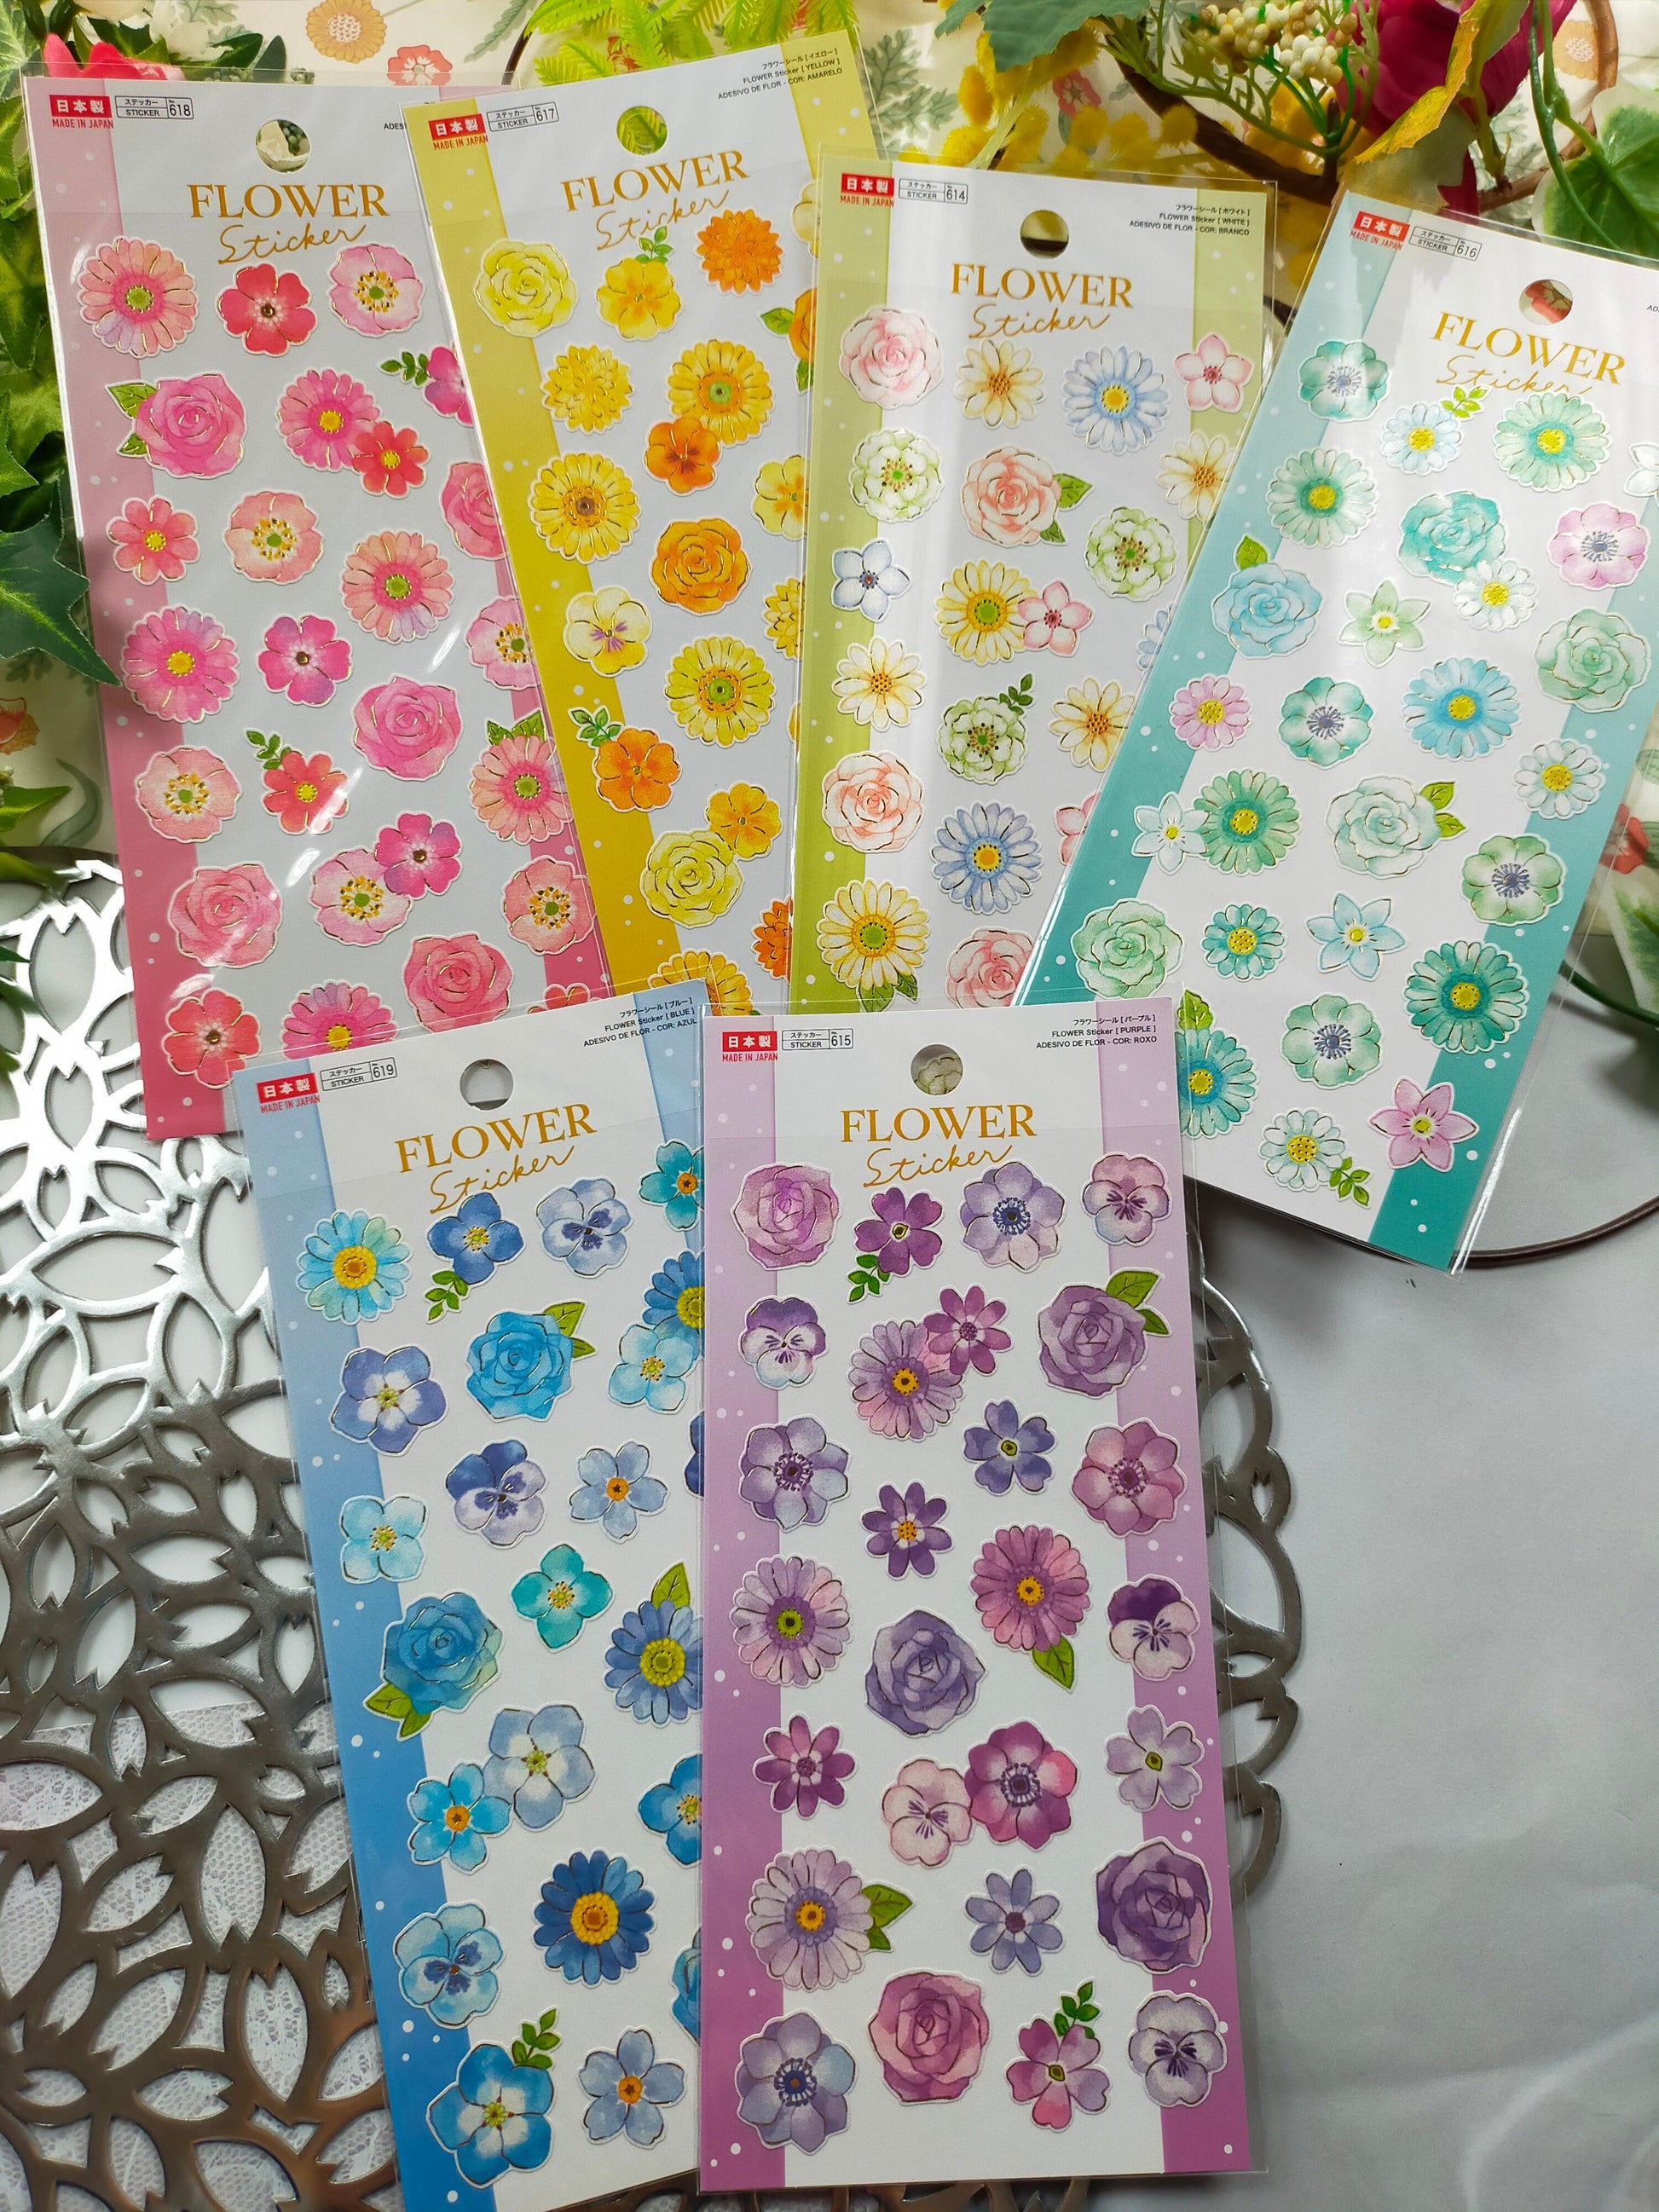 FLOWER Sticker,daiso sticker_Light Green /Pink/Yellow /Green /Blue /Purple